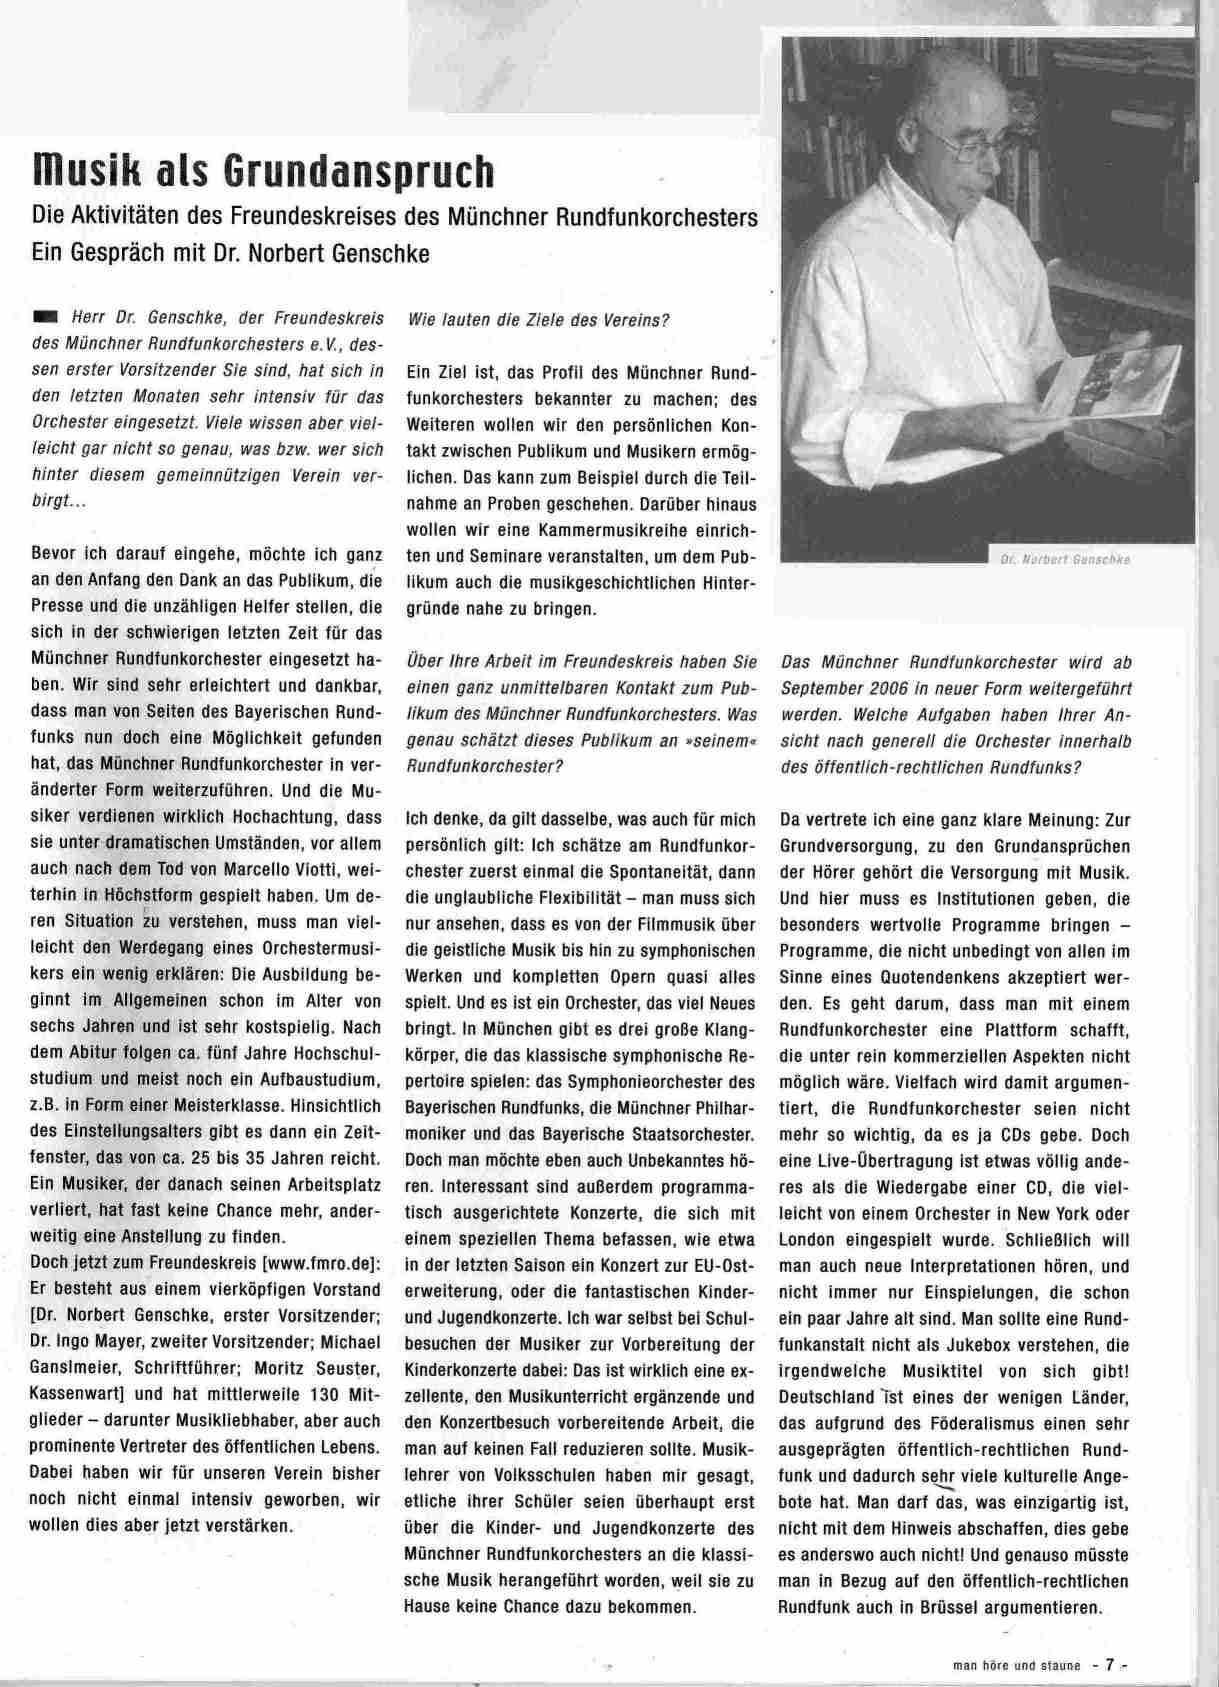 Interview in “man höre un staune” vom Mai 2004